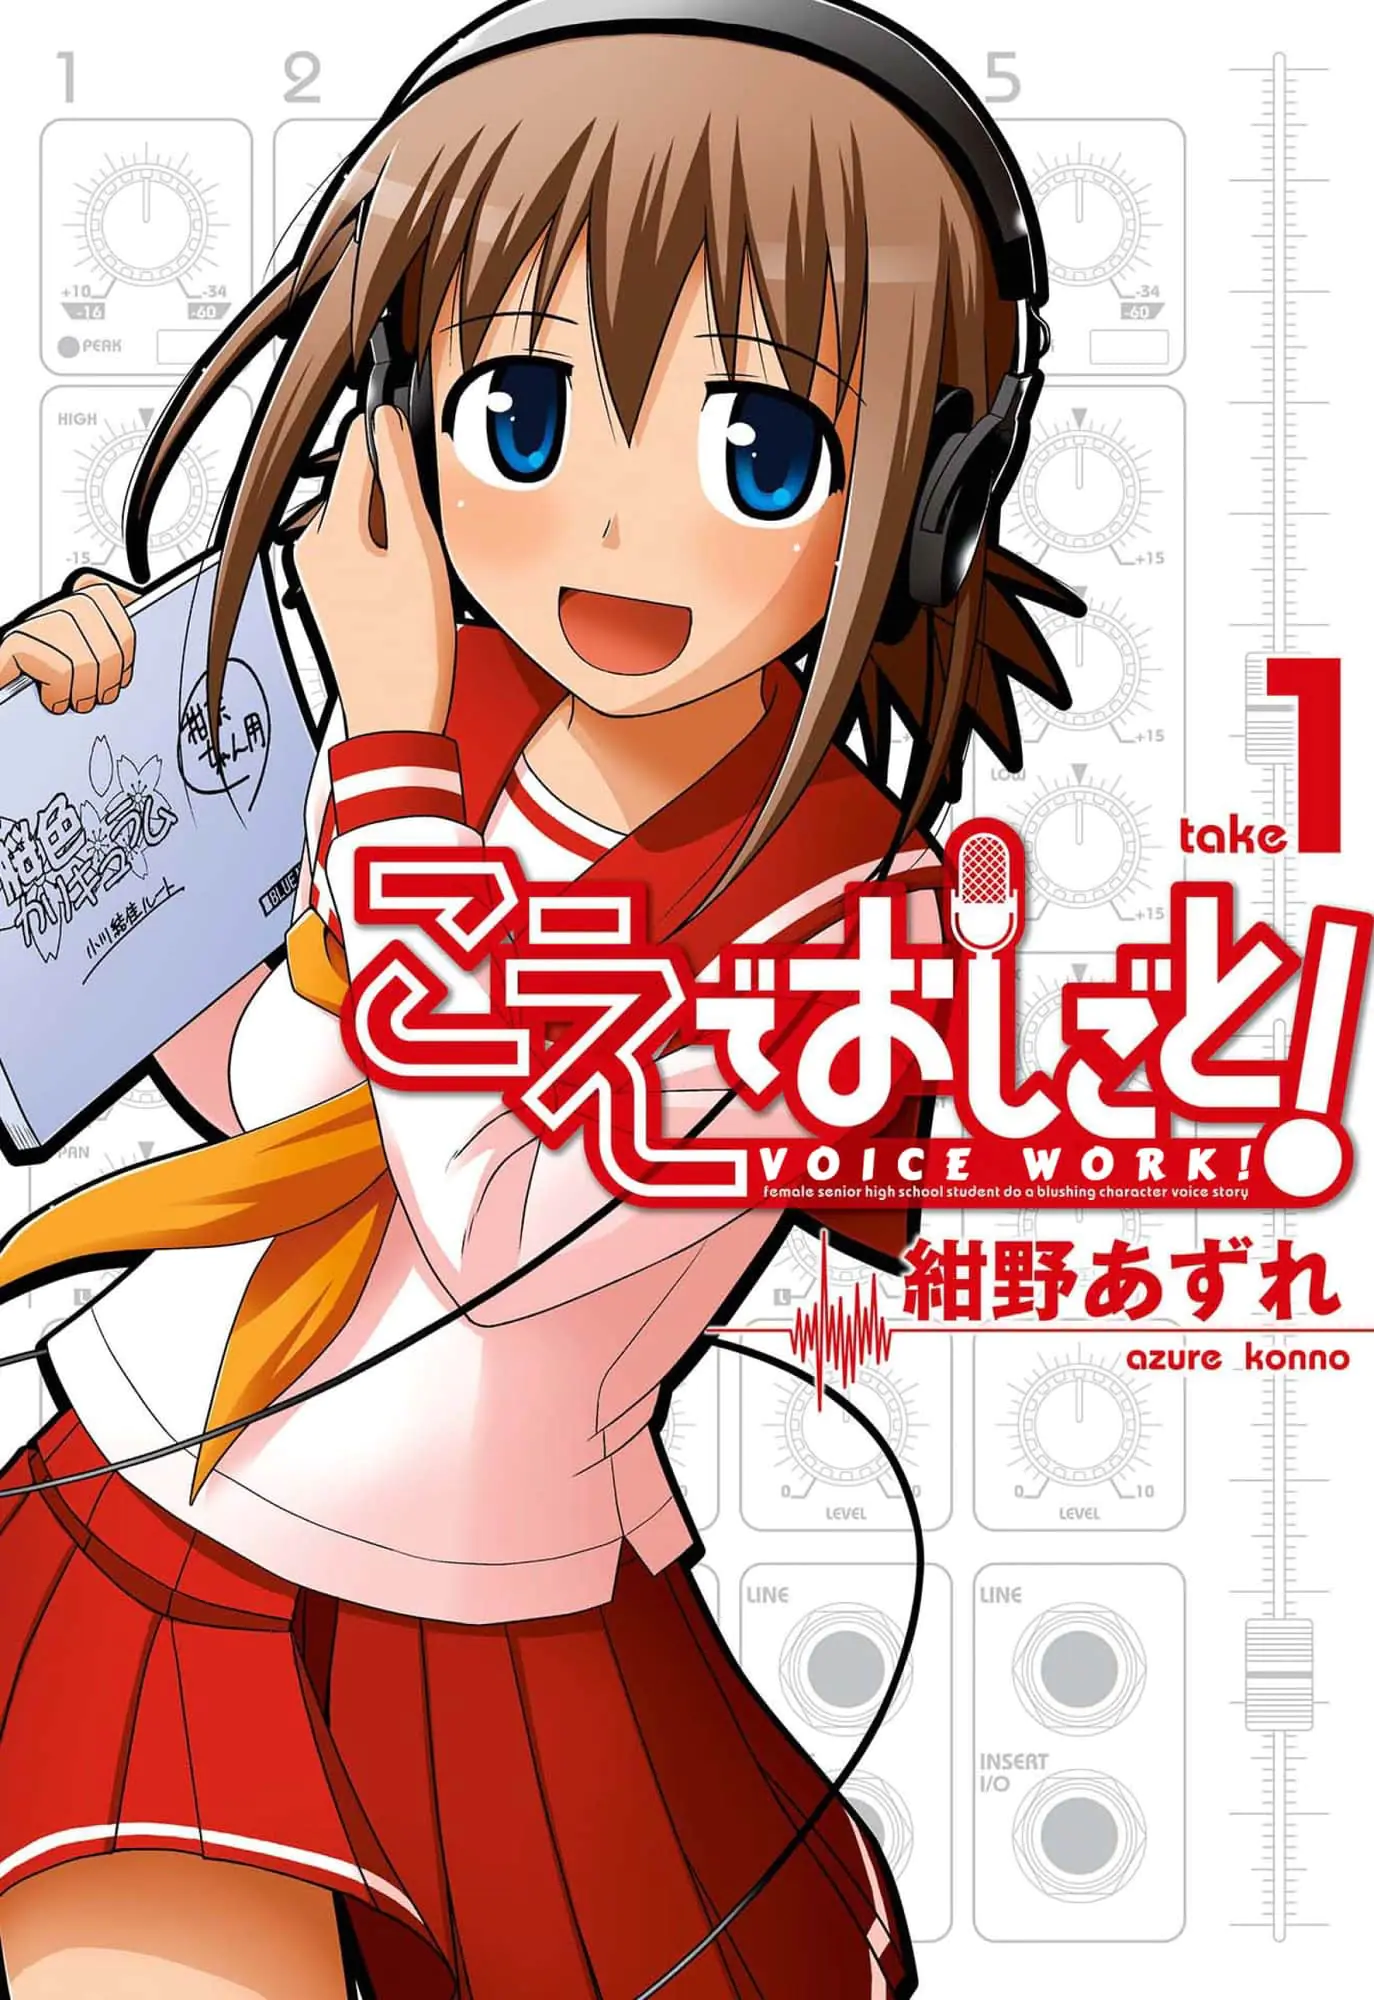 Manga Planet & futekiya merge — available title: Voice Work!